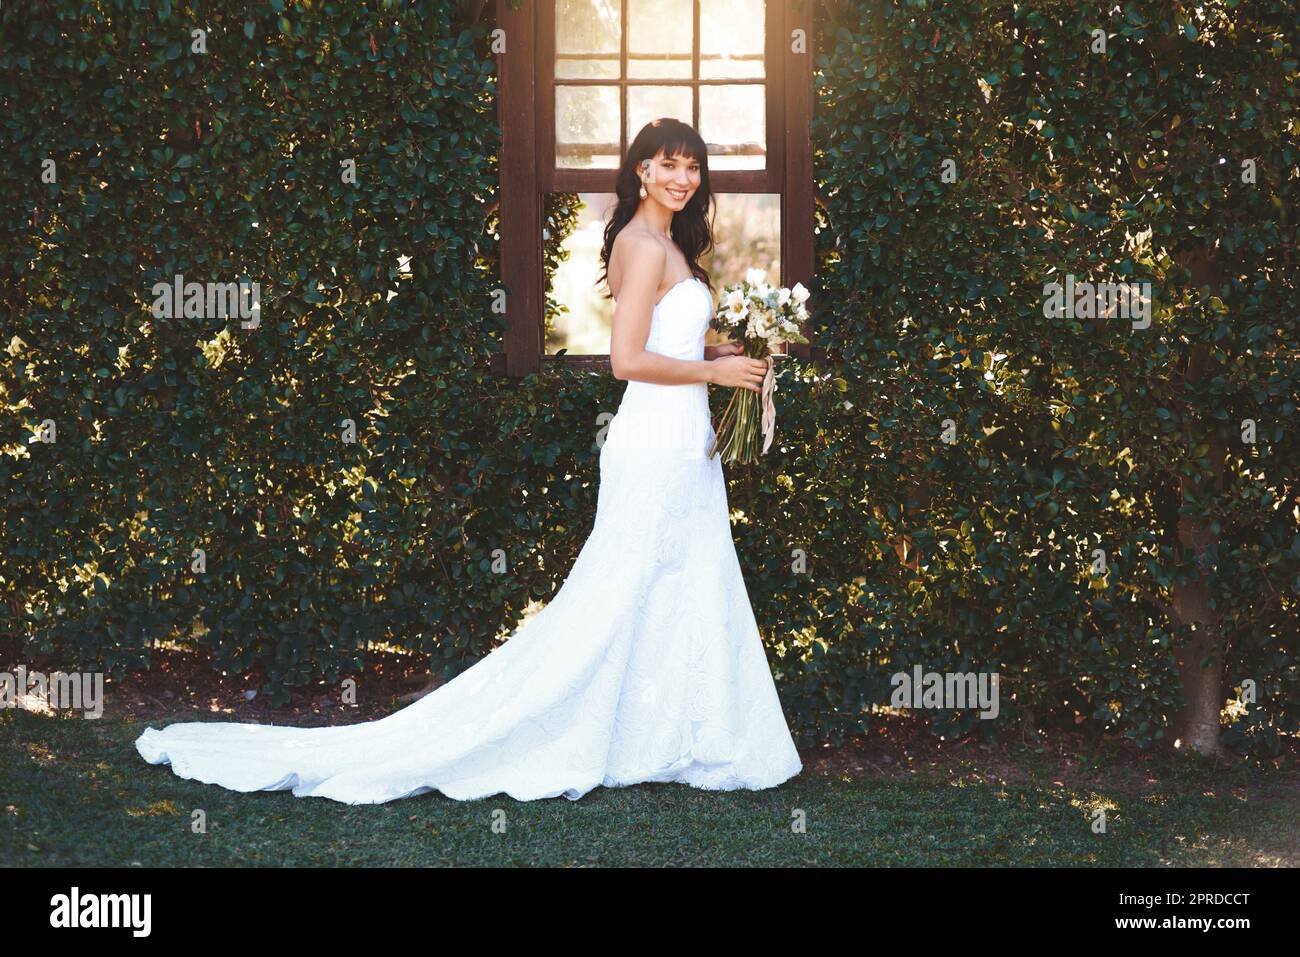 Sie sieht an ihrem besonderen Tag schön aus. Eine schöne Braut an ihrem Hochzeitstag. Stockfoto